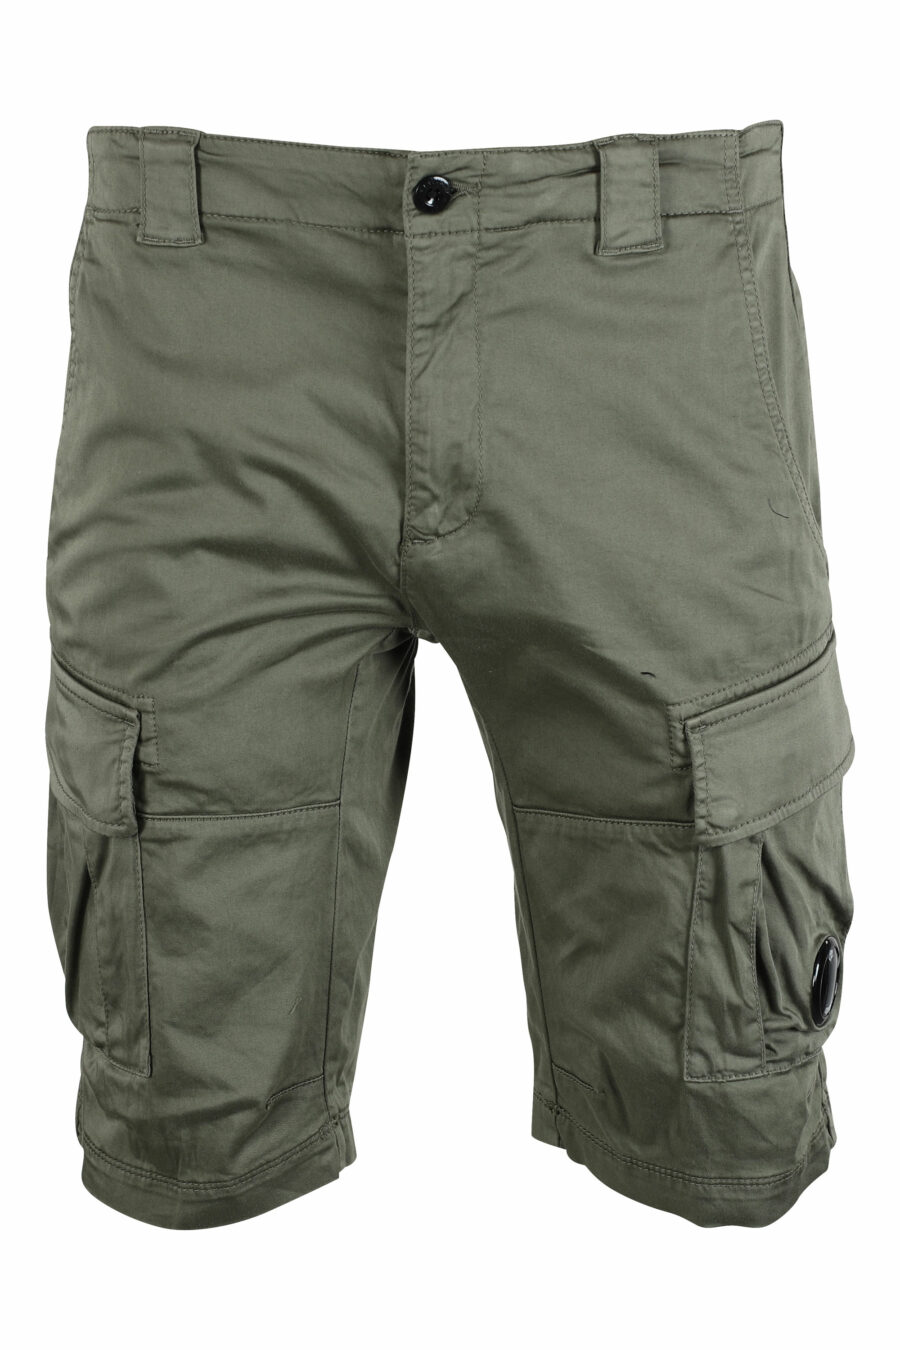 Pantalón corto verde militar estilo cargo con minilogo circular - IMG 9497